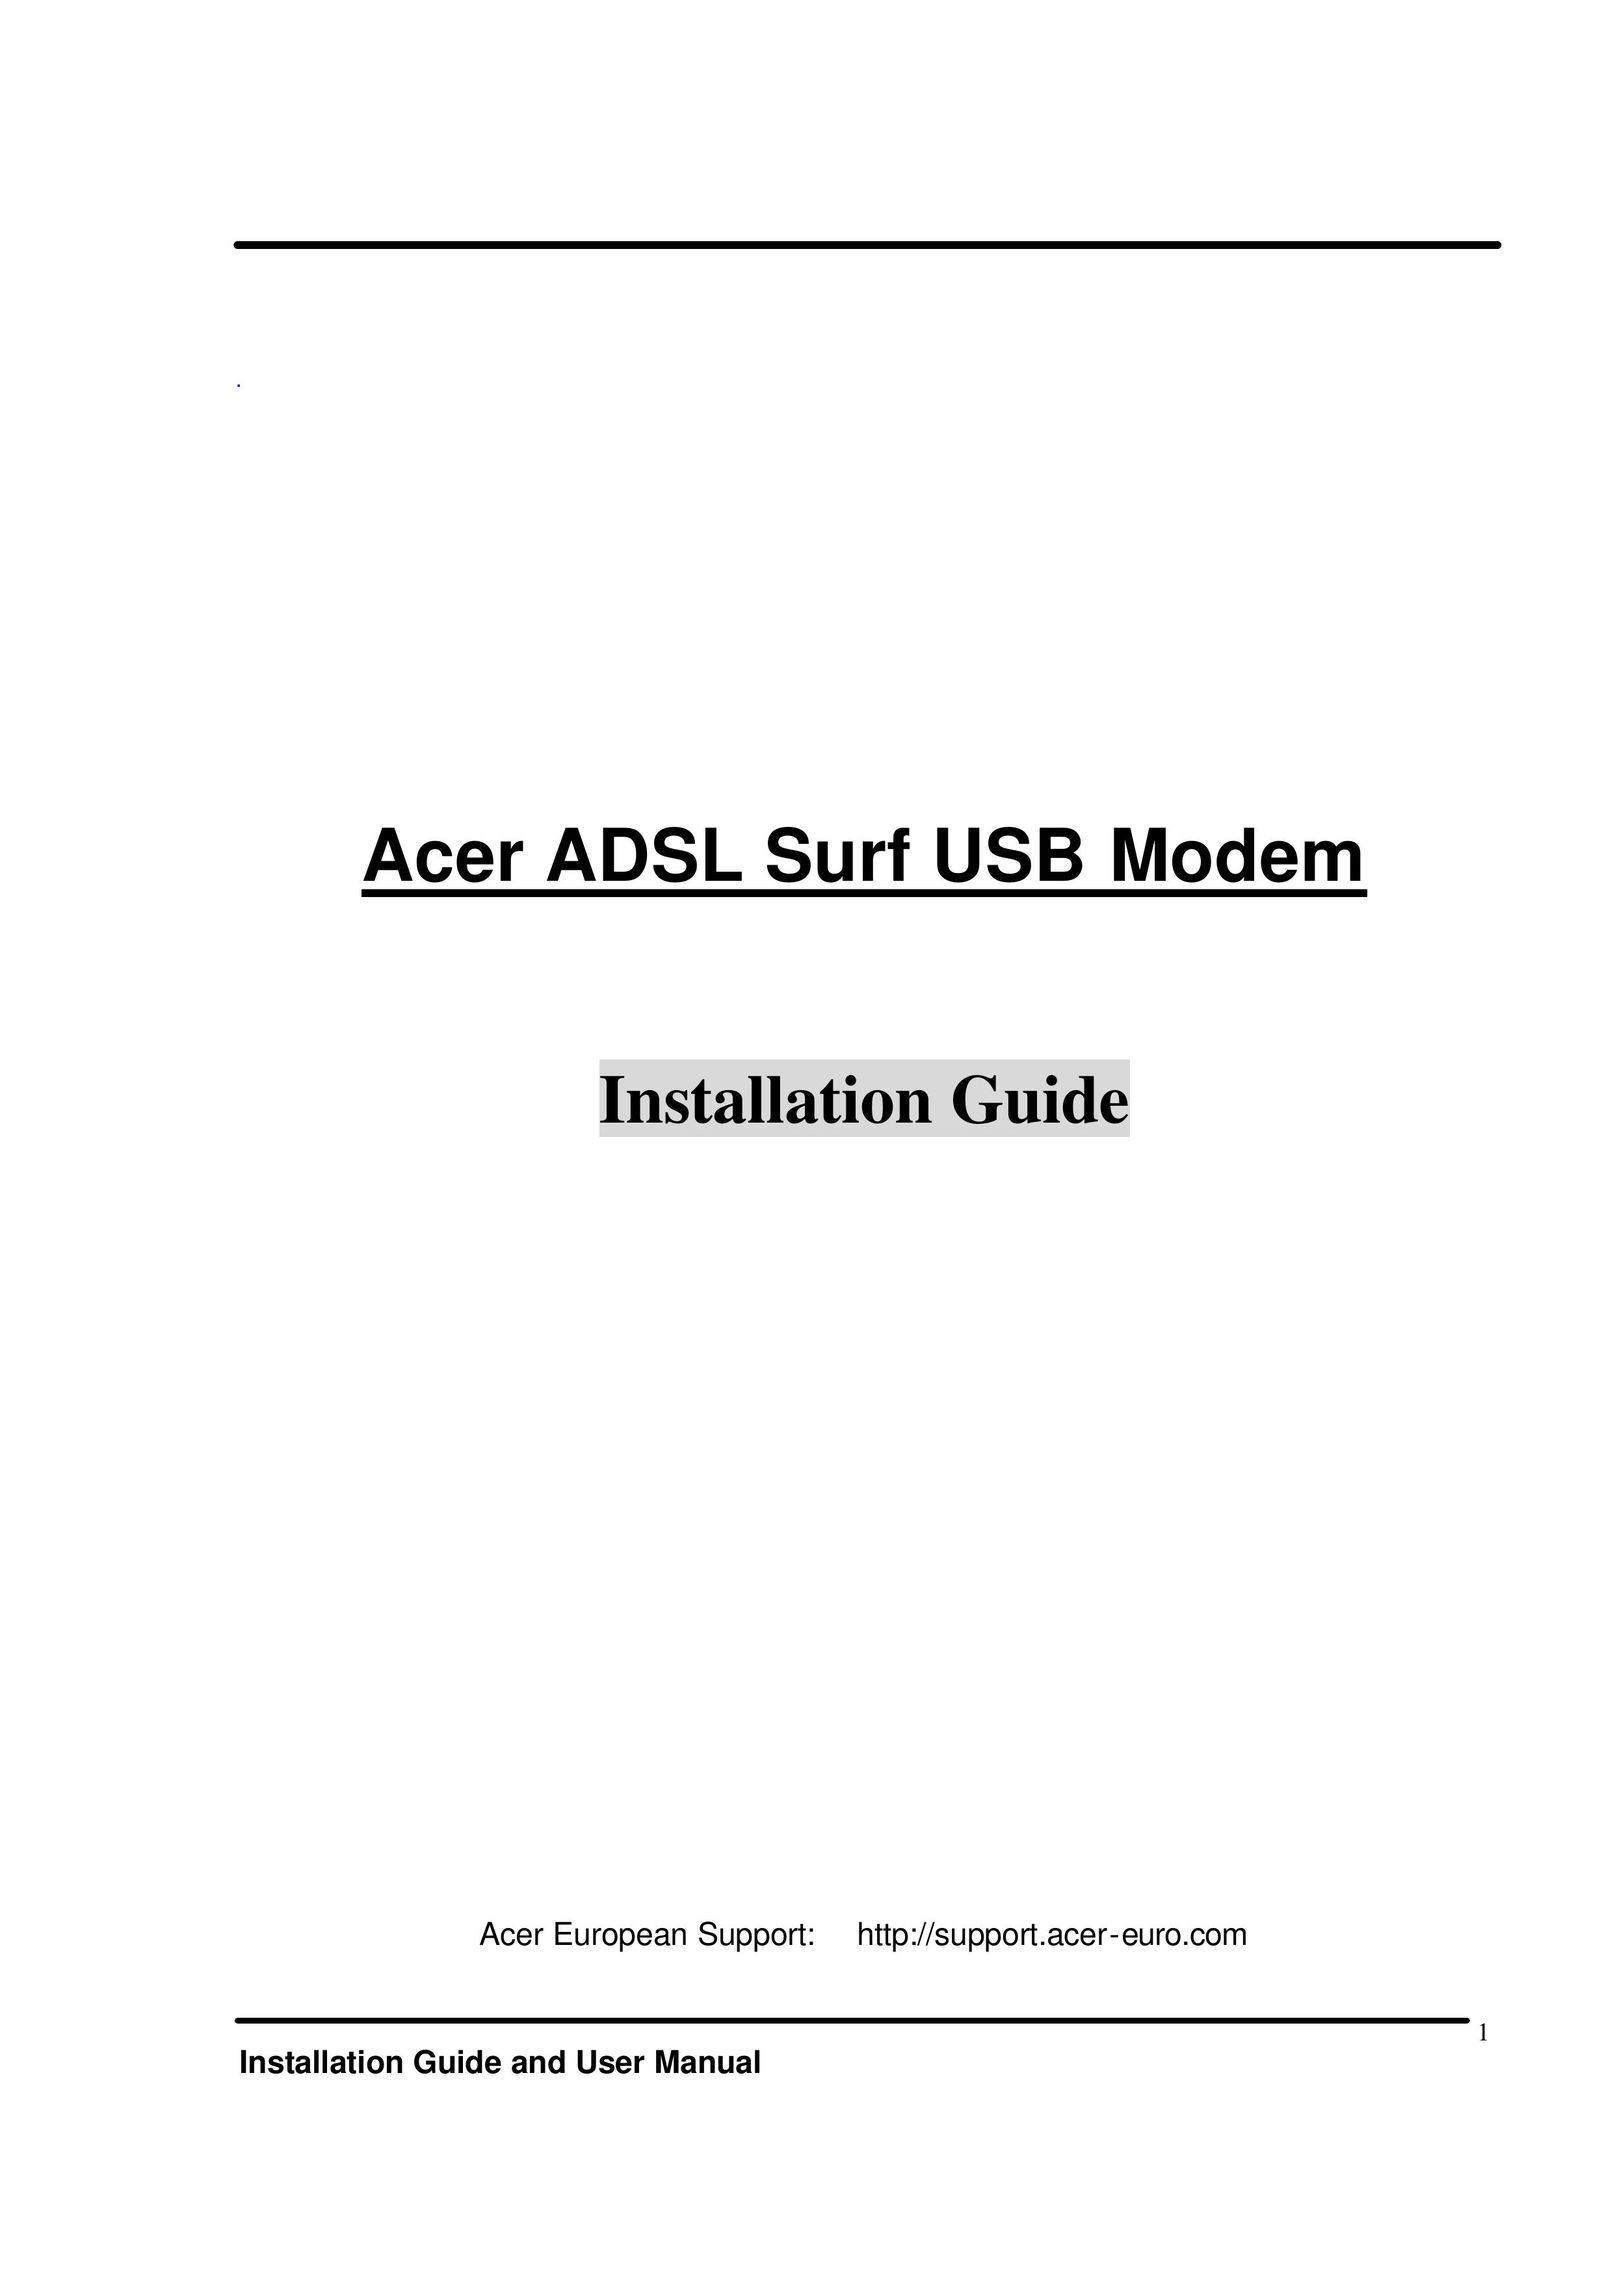 Acer ADSL Surf USB Modem Network Router User Manual